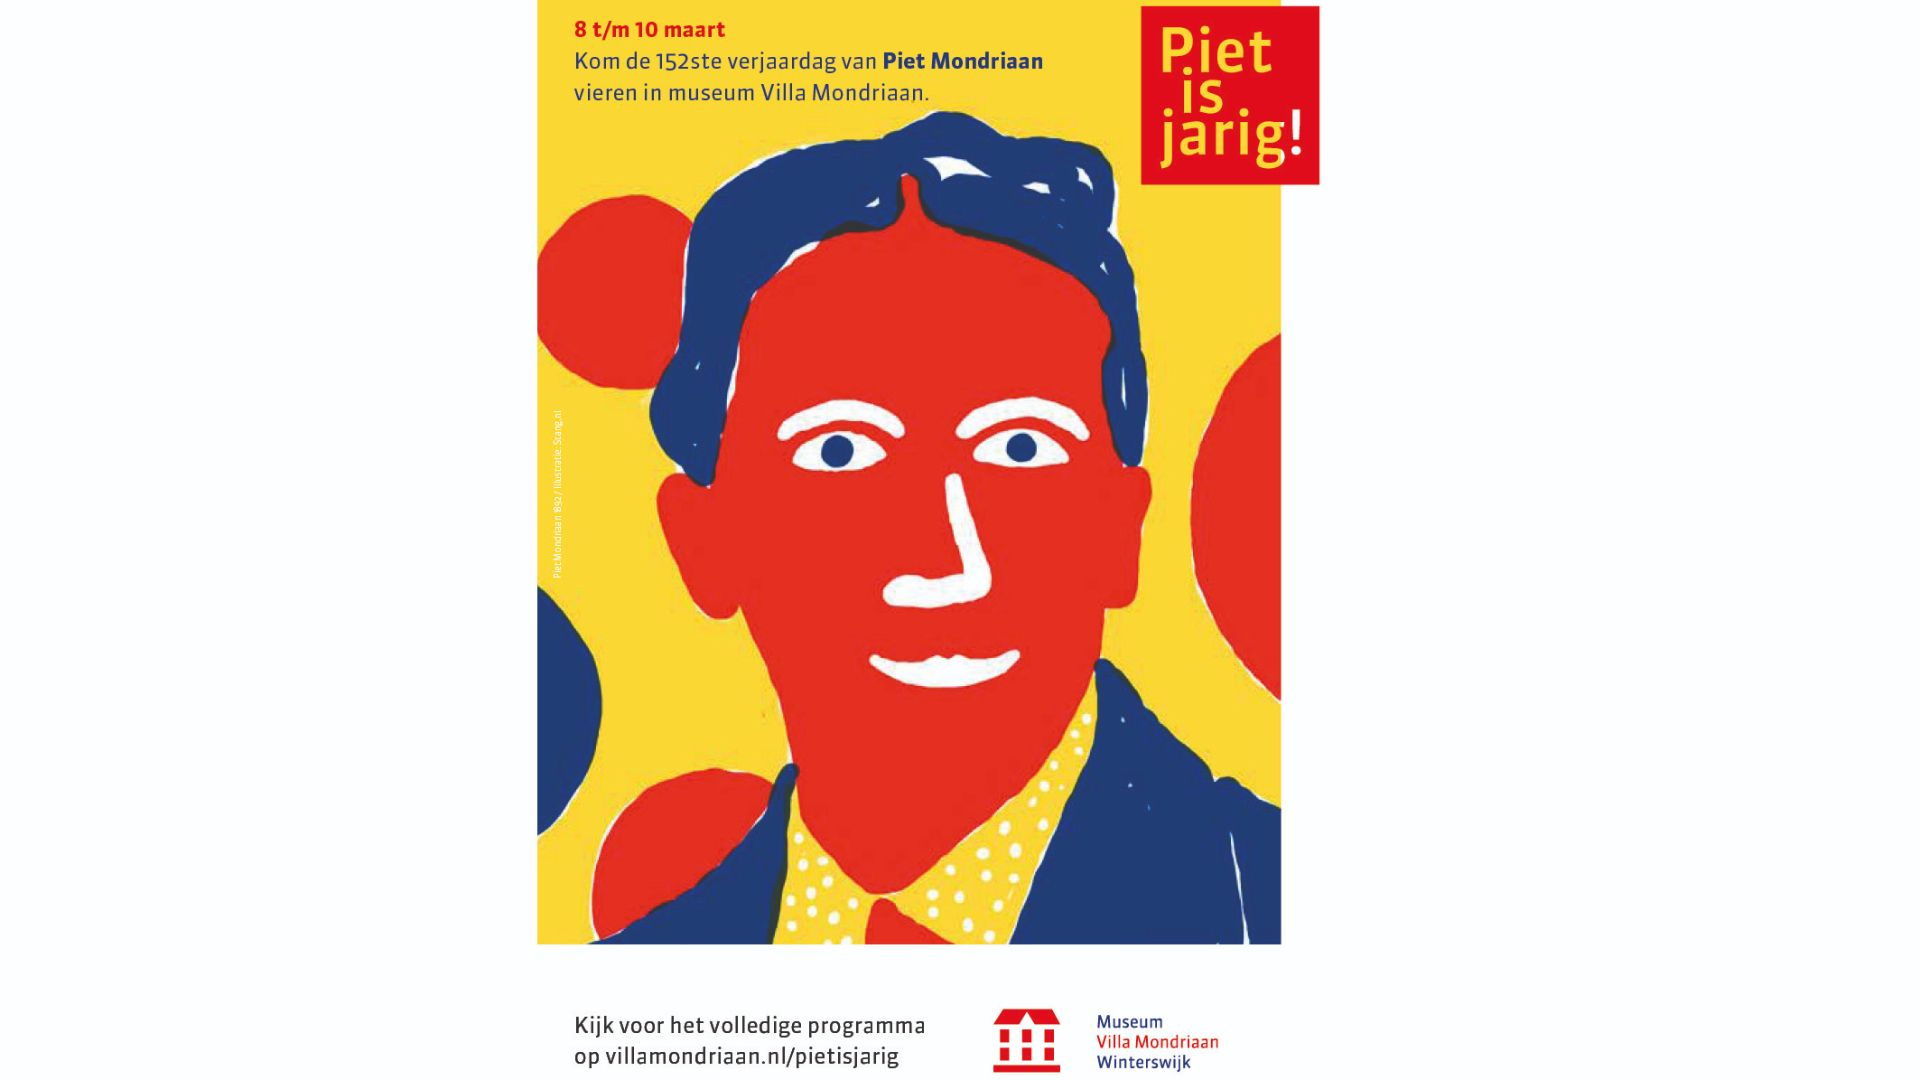 In Museum Villa Mondriaan is Piet jarig